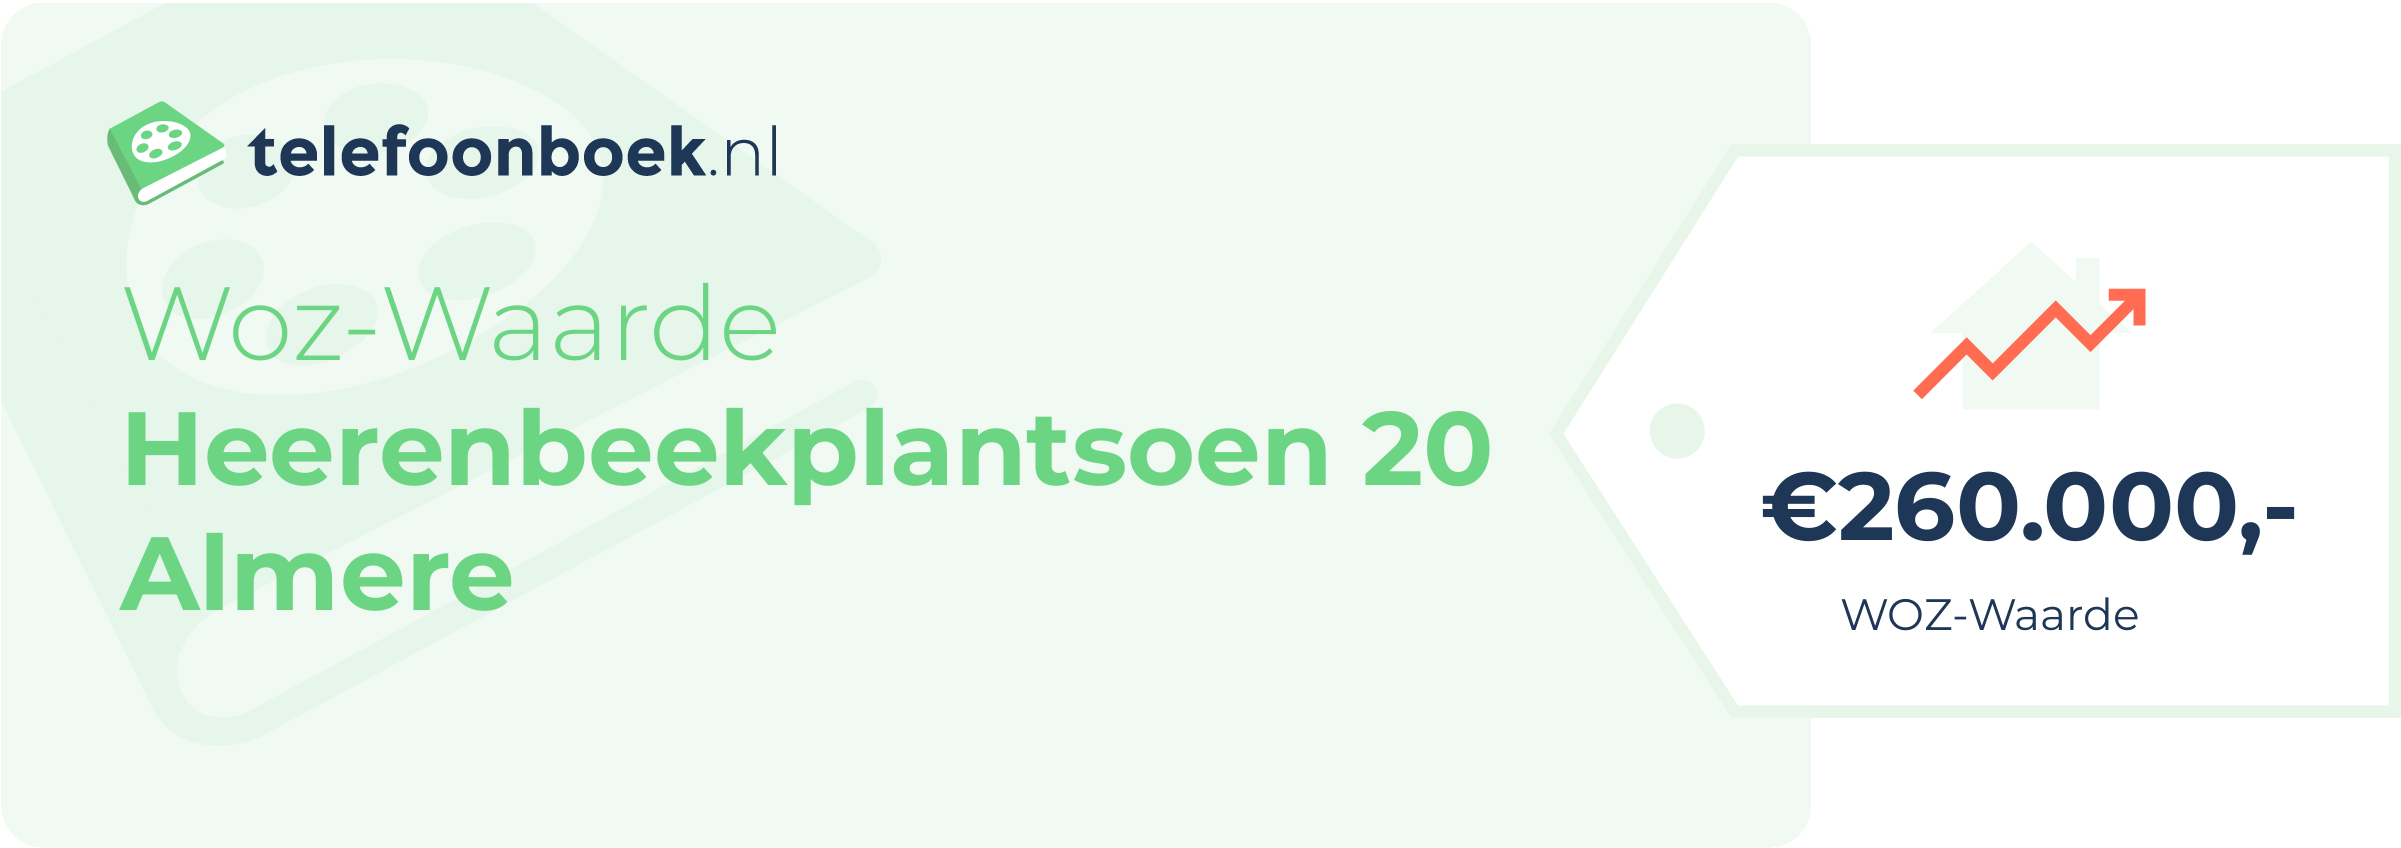 WOZ-waarde Heerenbeekplantsoen 20 Almere